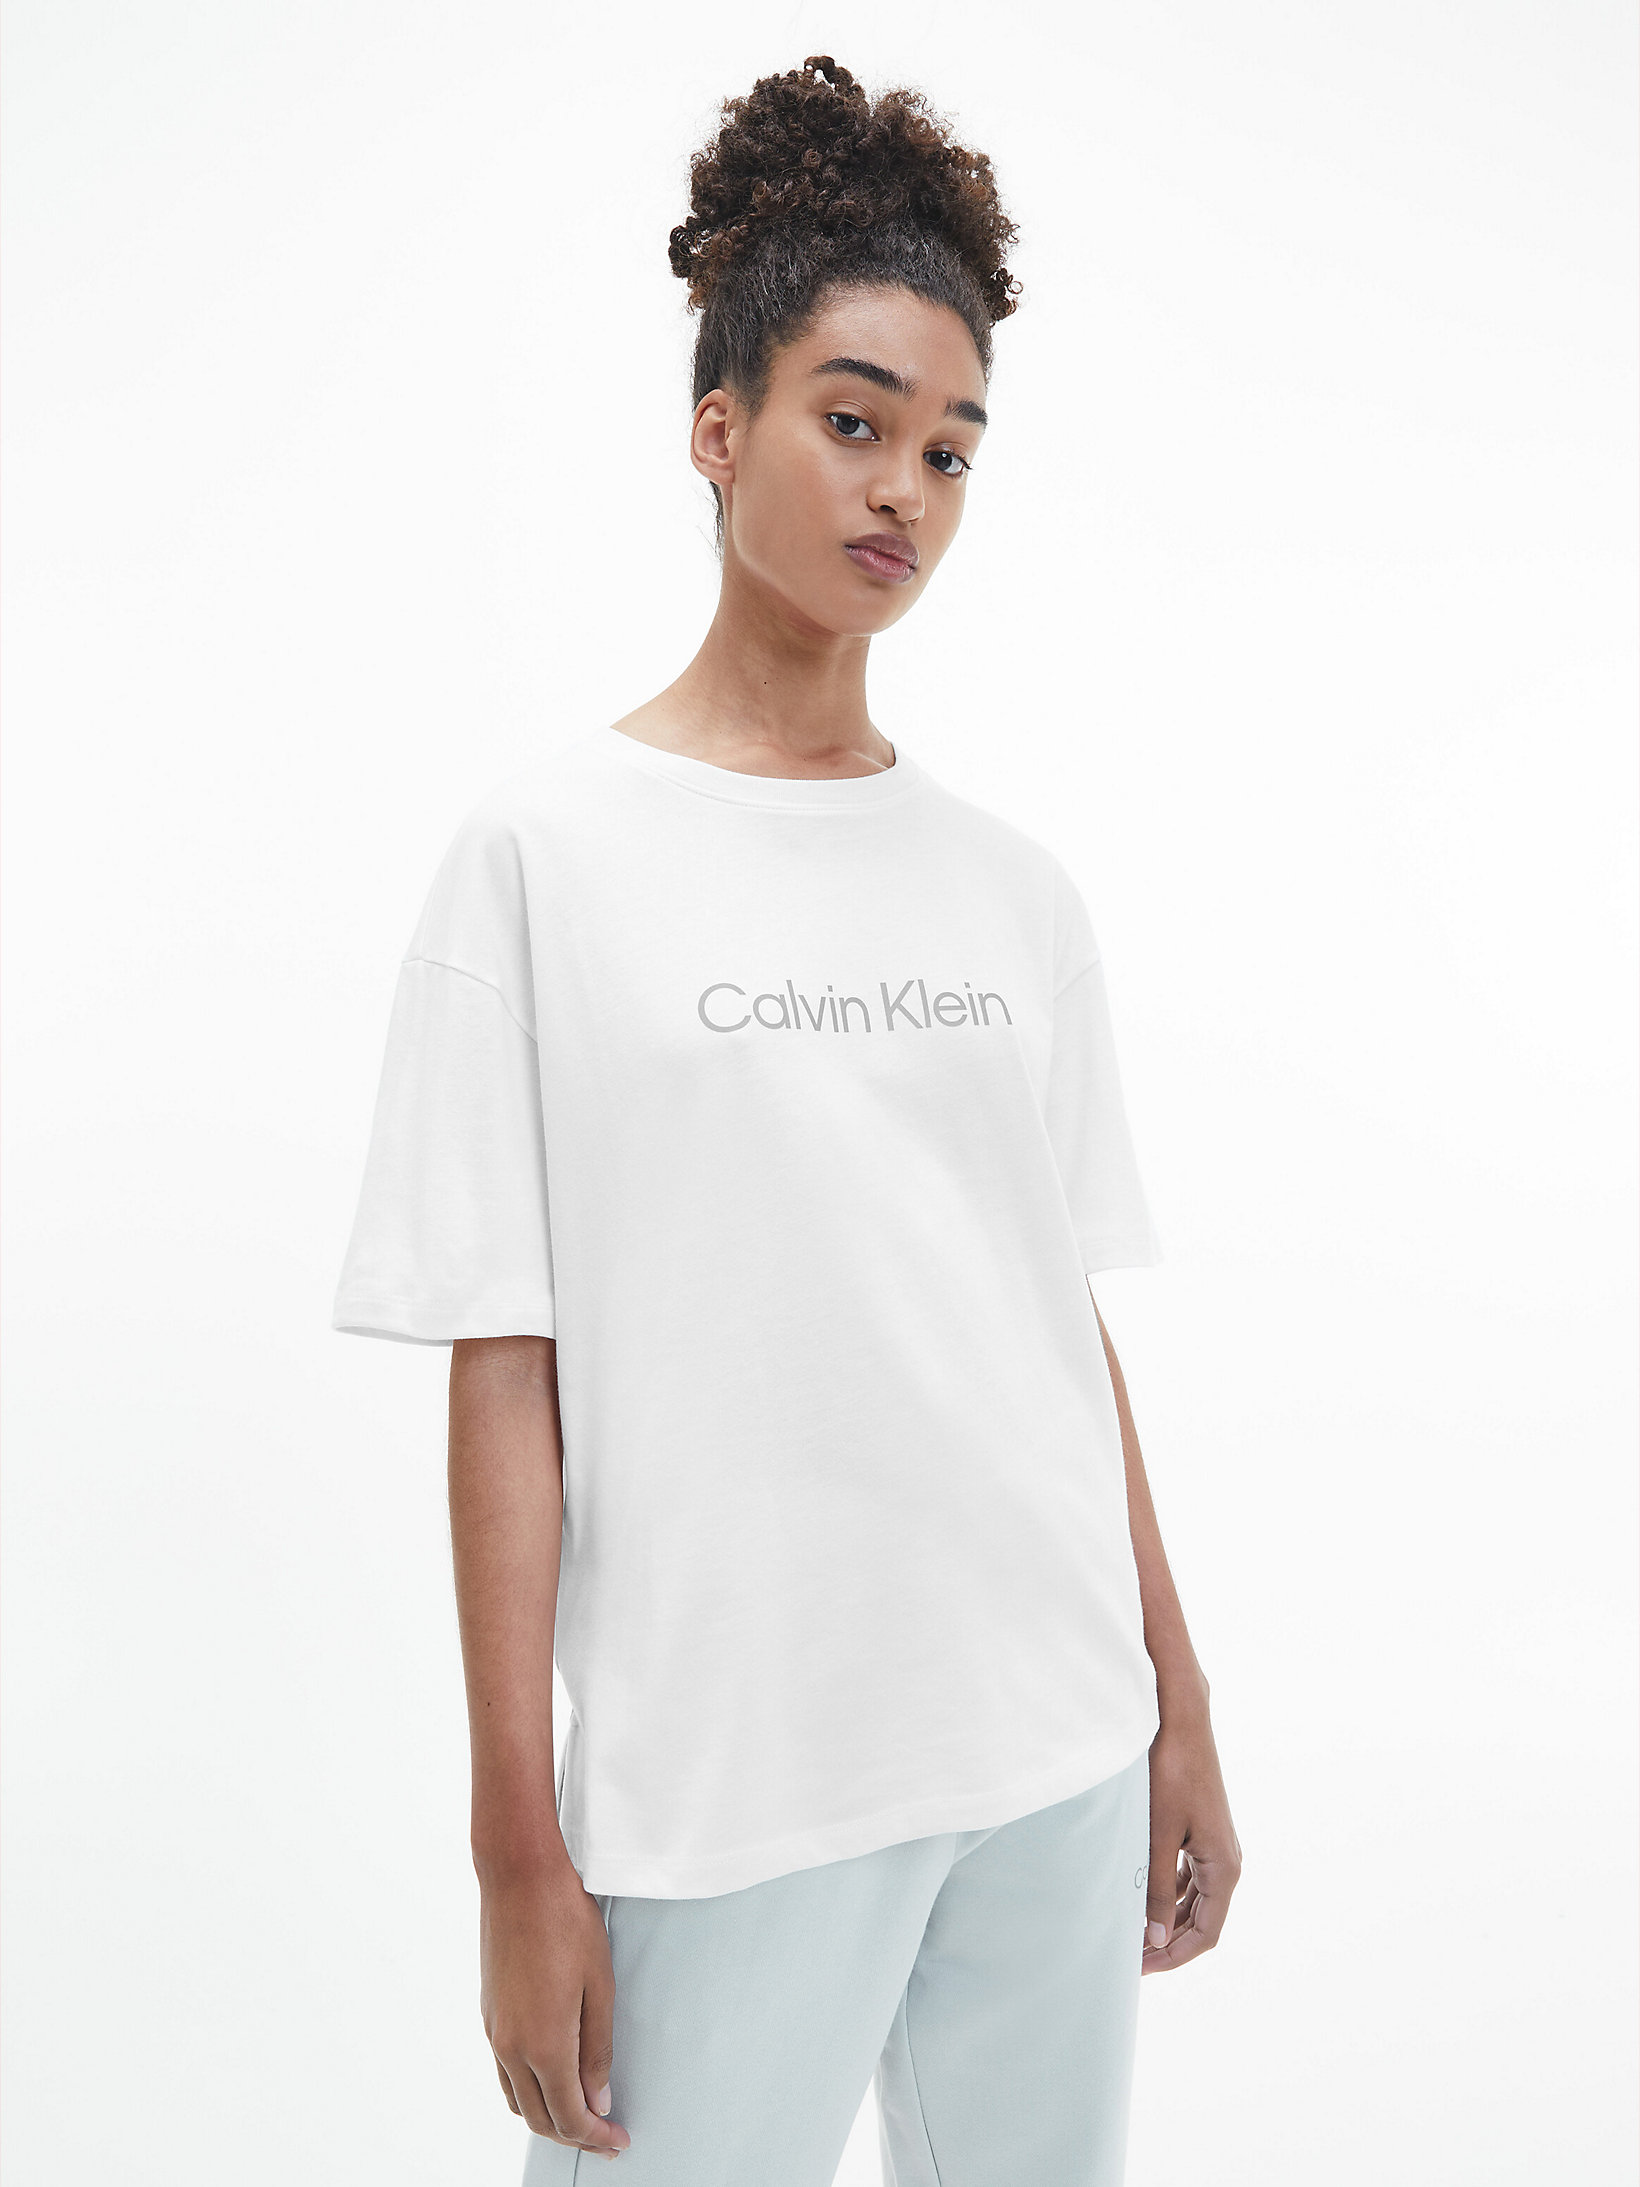 T-Shirt De Sport Boyfriend > Bright White > undefined femmes > Calvin Klein